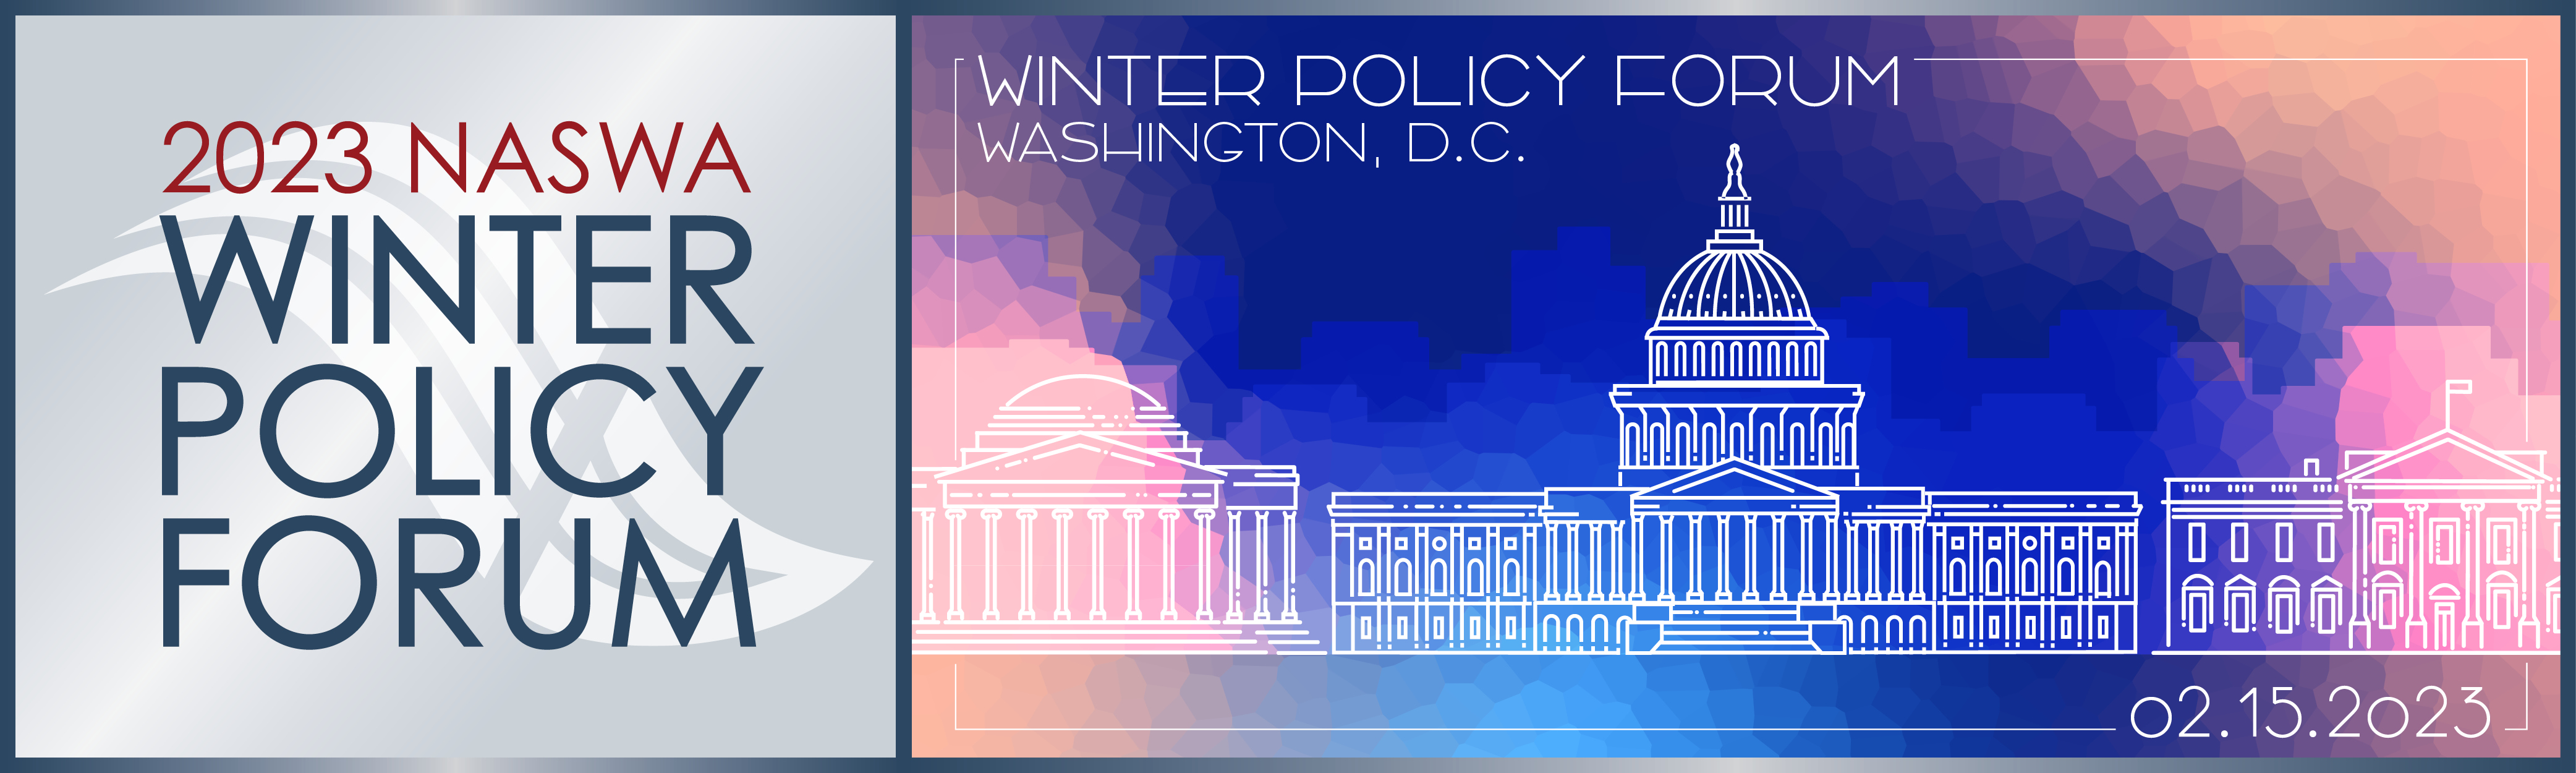 2023 Winter Policy Forum Header